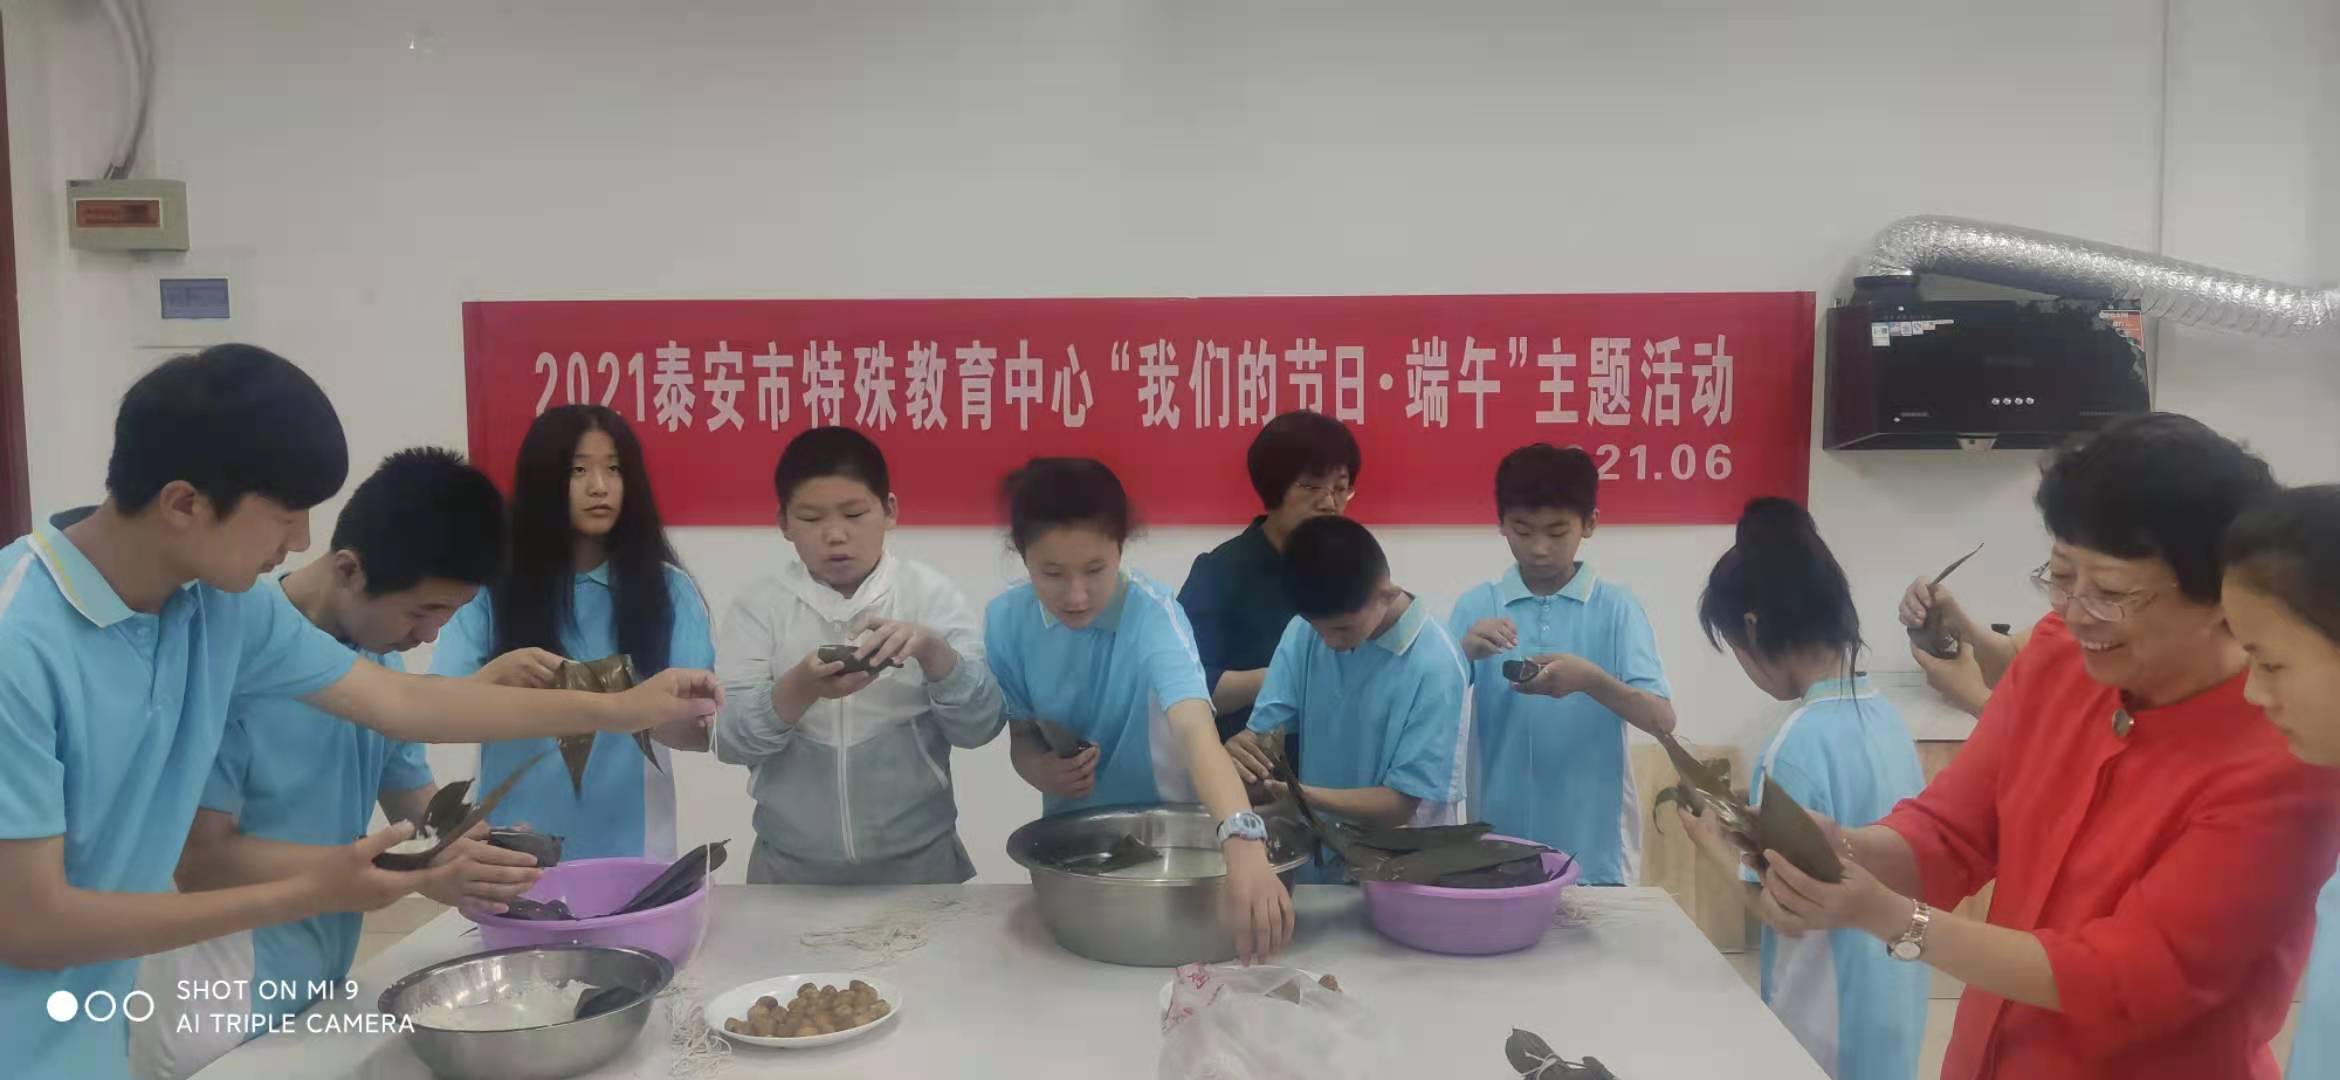 泰安市特殊教育中心2021年6月11日在家政室制作传统食品粽子.jpg